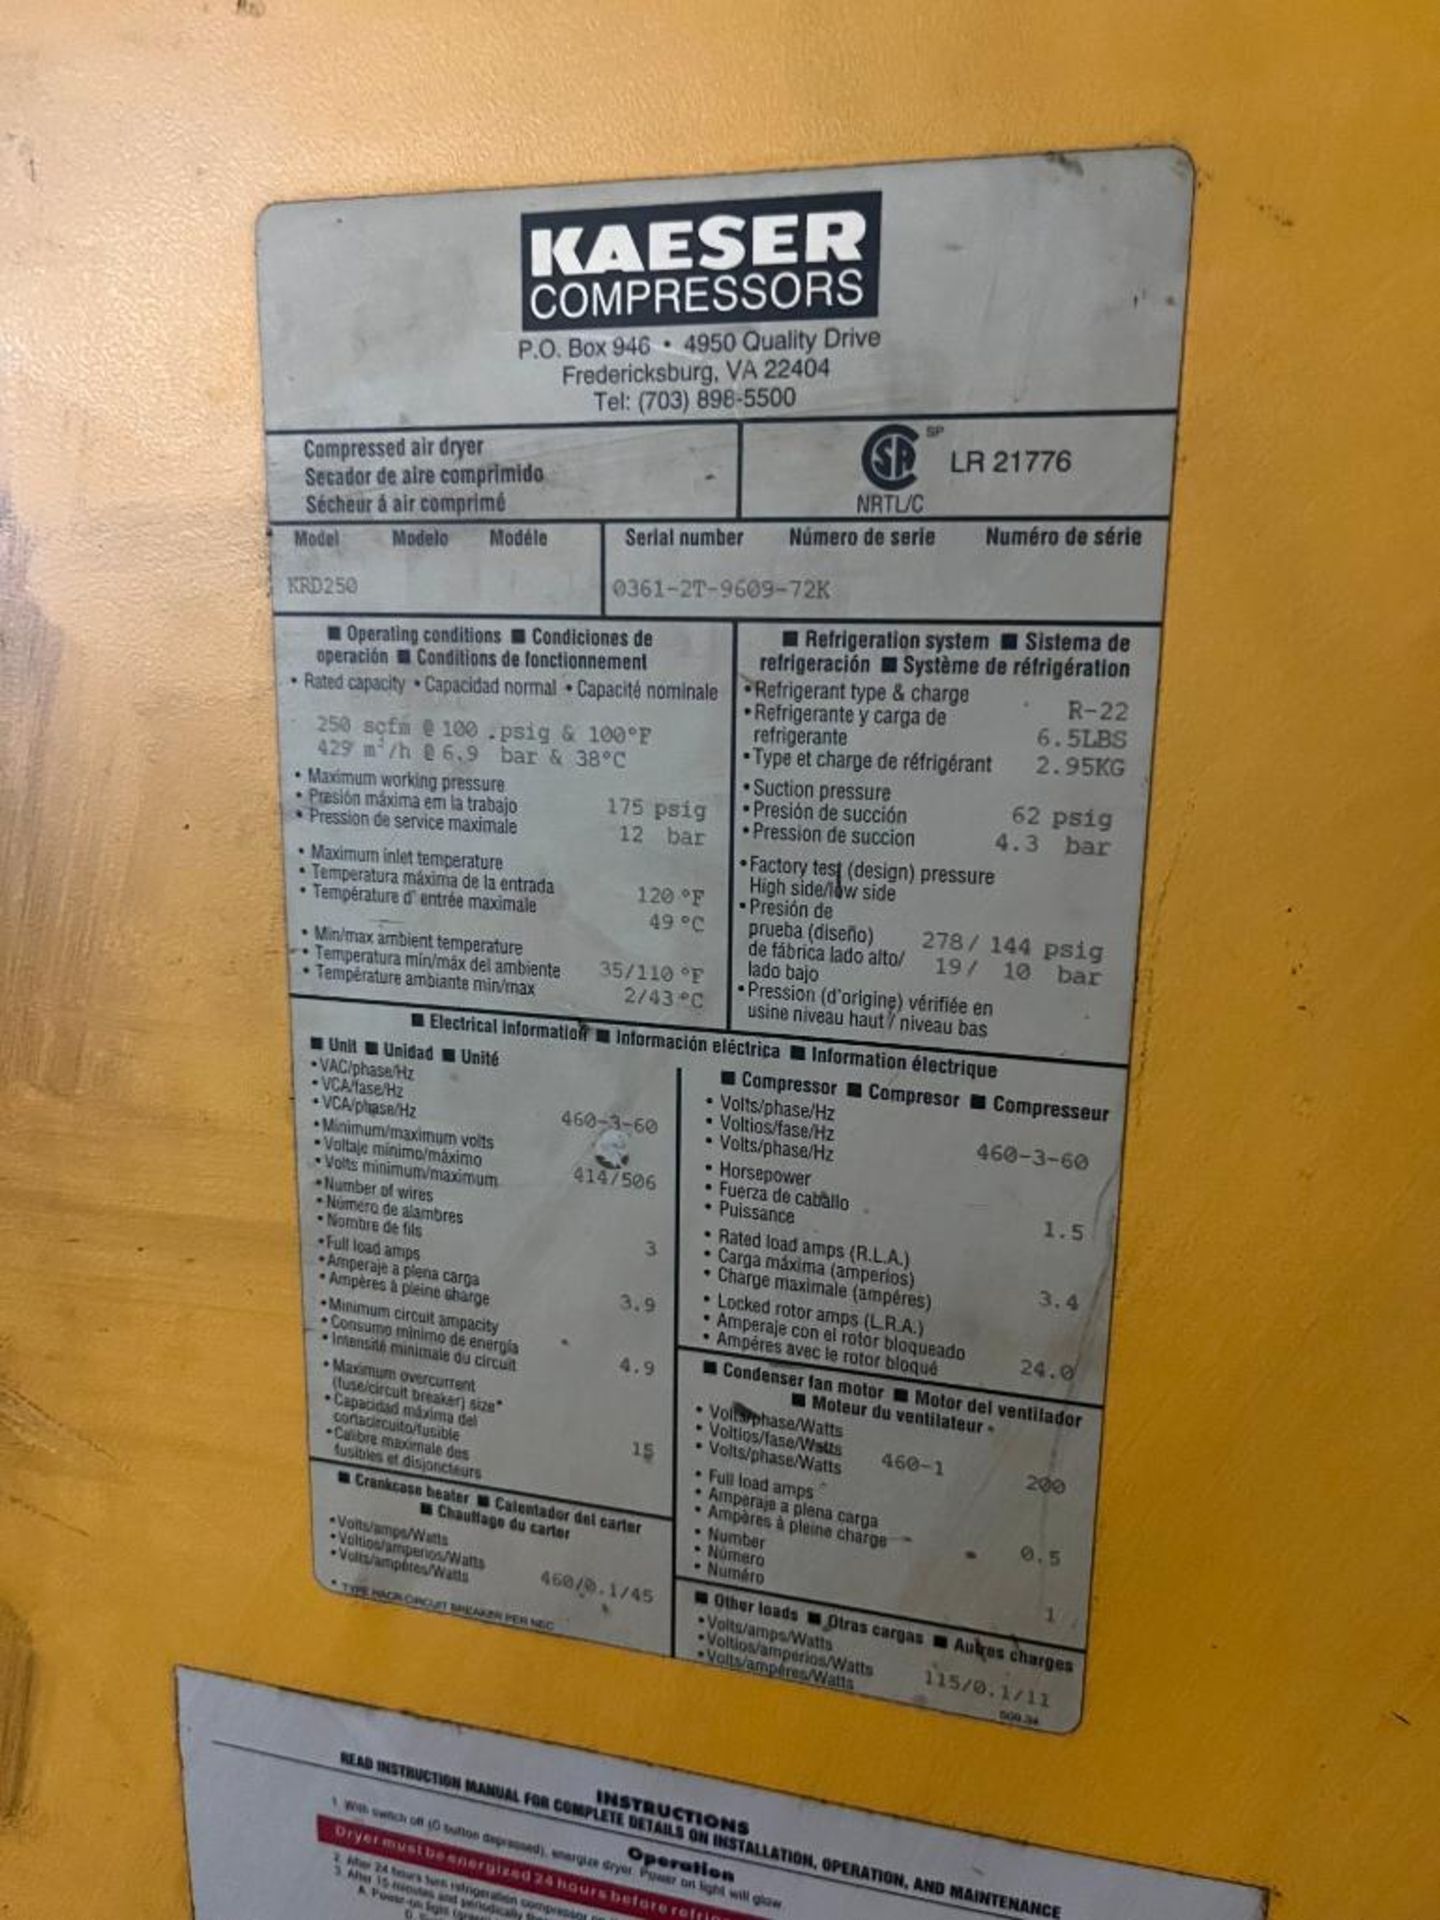 Kaeser Compressor, Model BS61, S/N 5102309, 50 HP, & Kaeser Dryer, Model KRD250, S/N 0361-2-9609-72K - Image 4 of 5